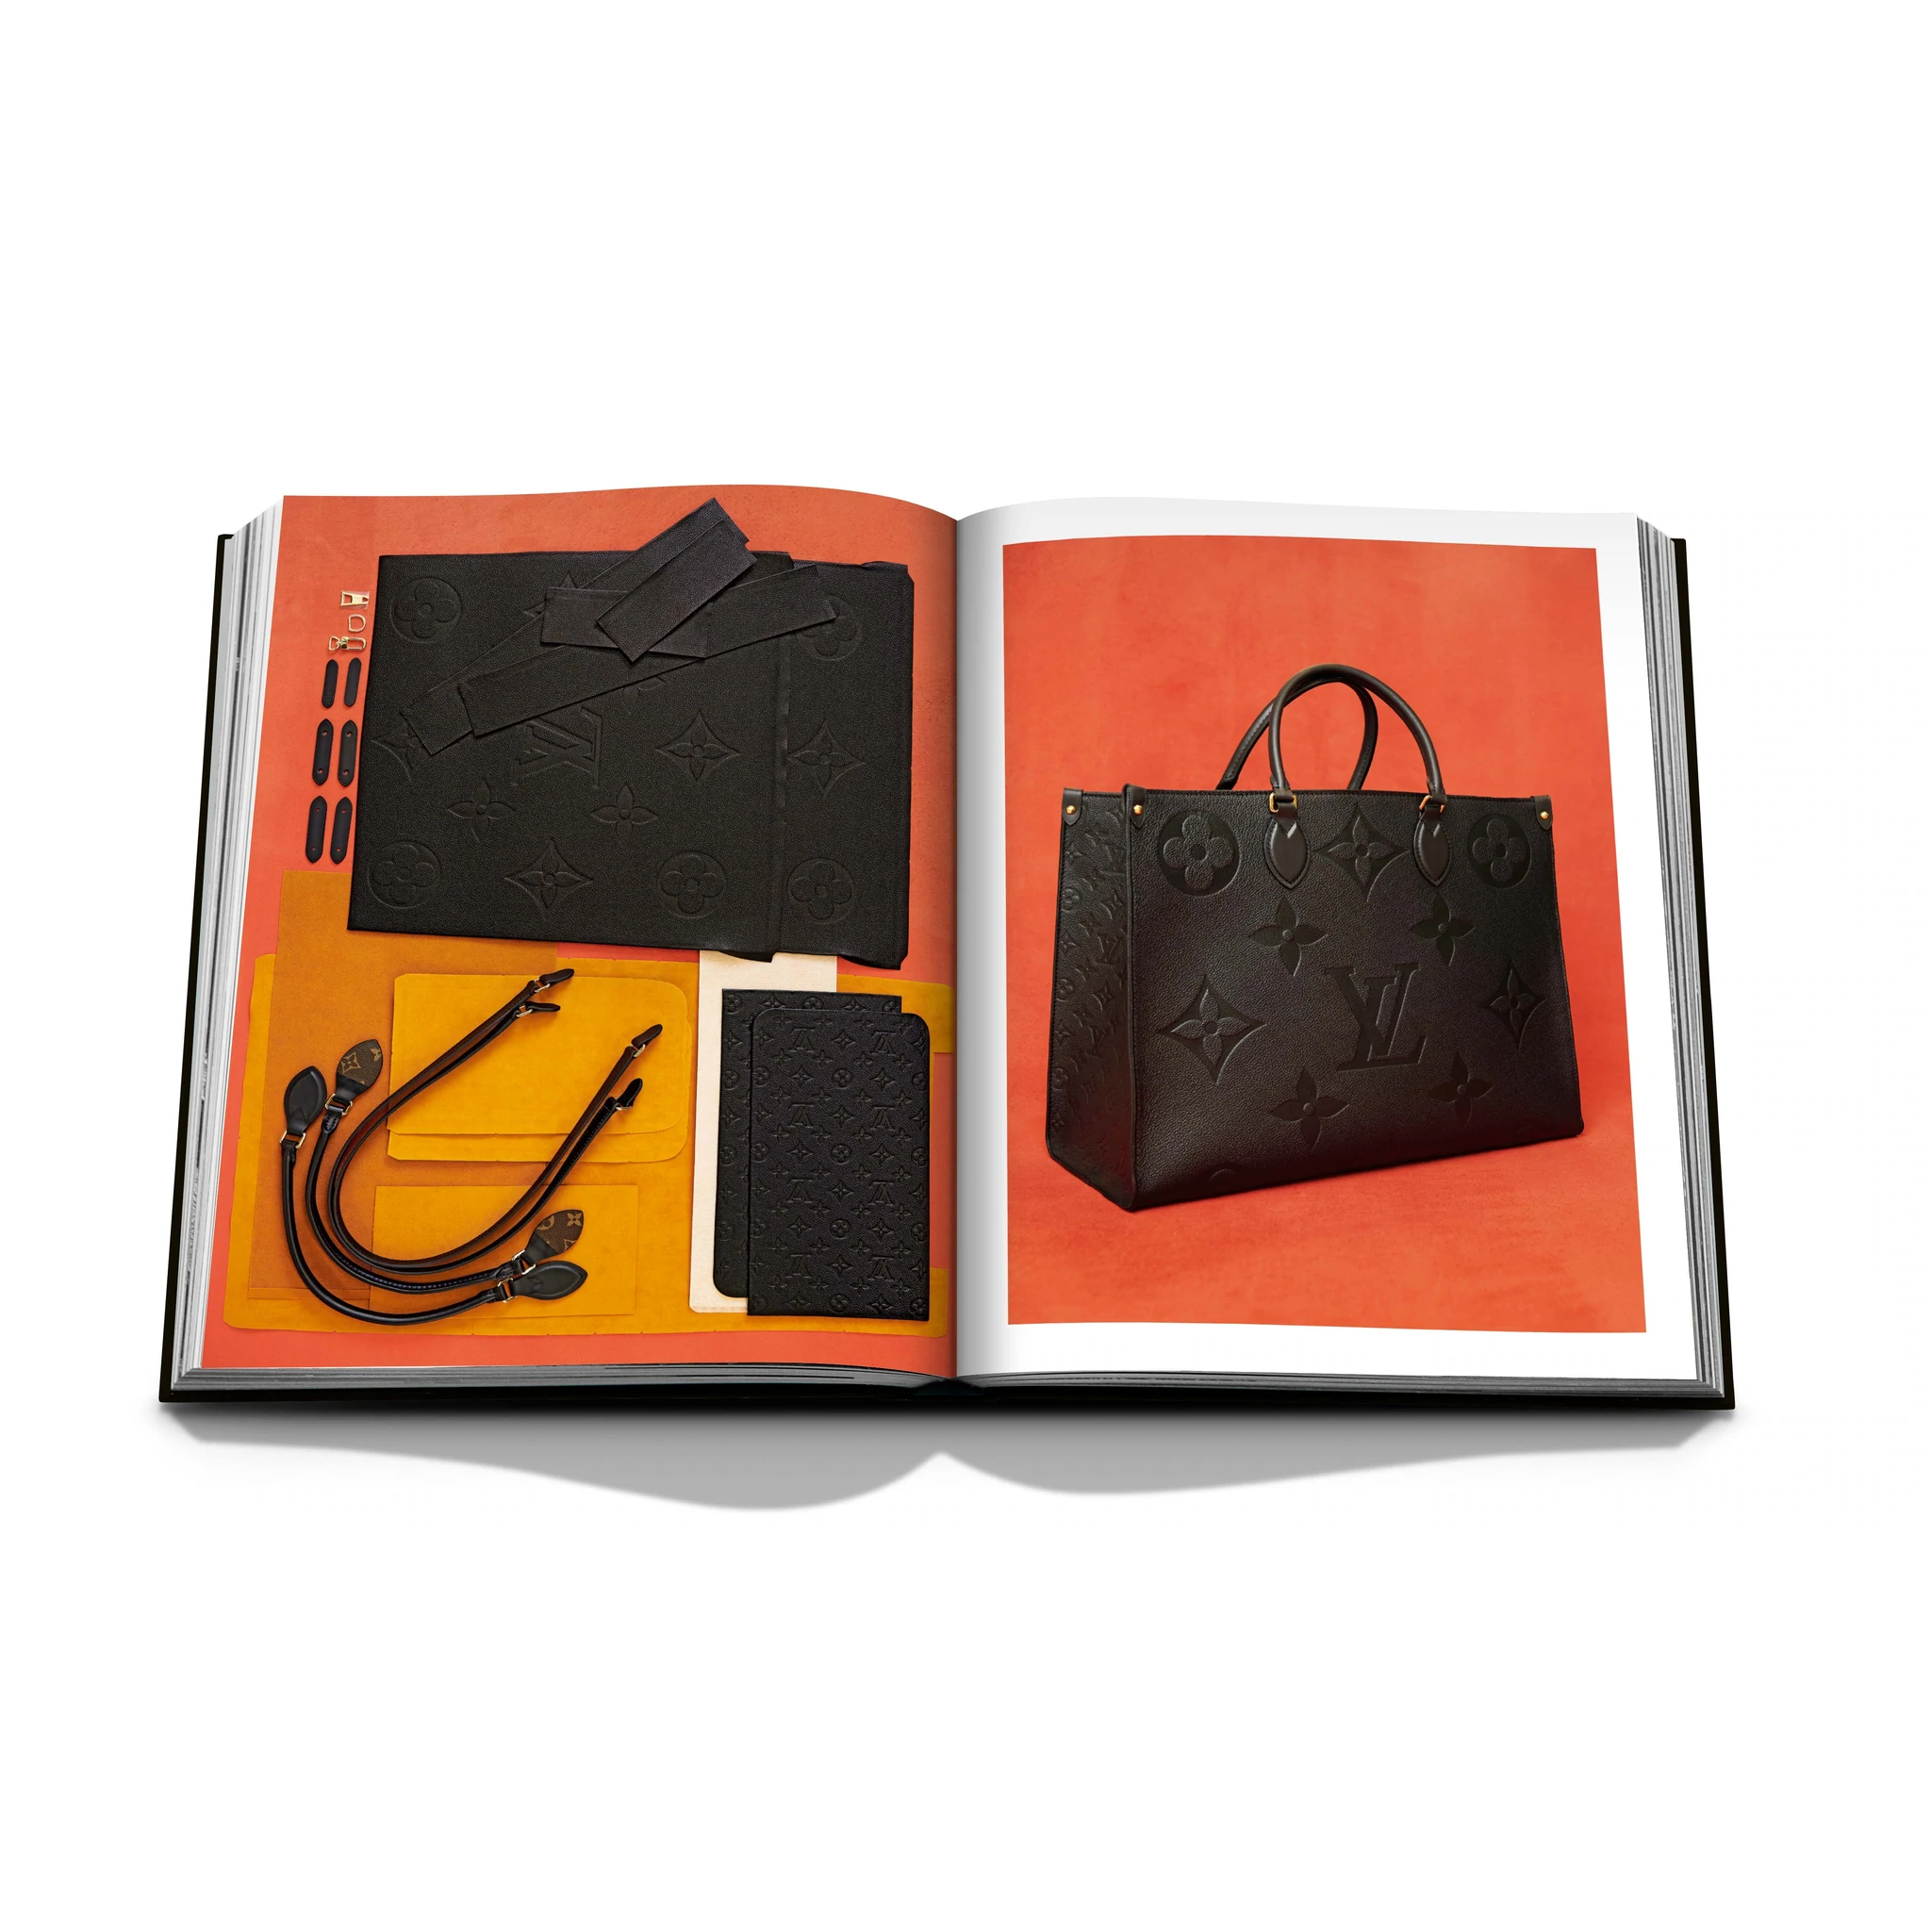 Assouline Louis Vuitton Manufactures – Maison & Tavola